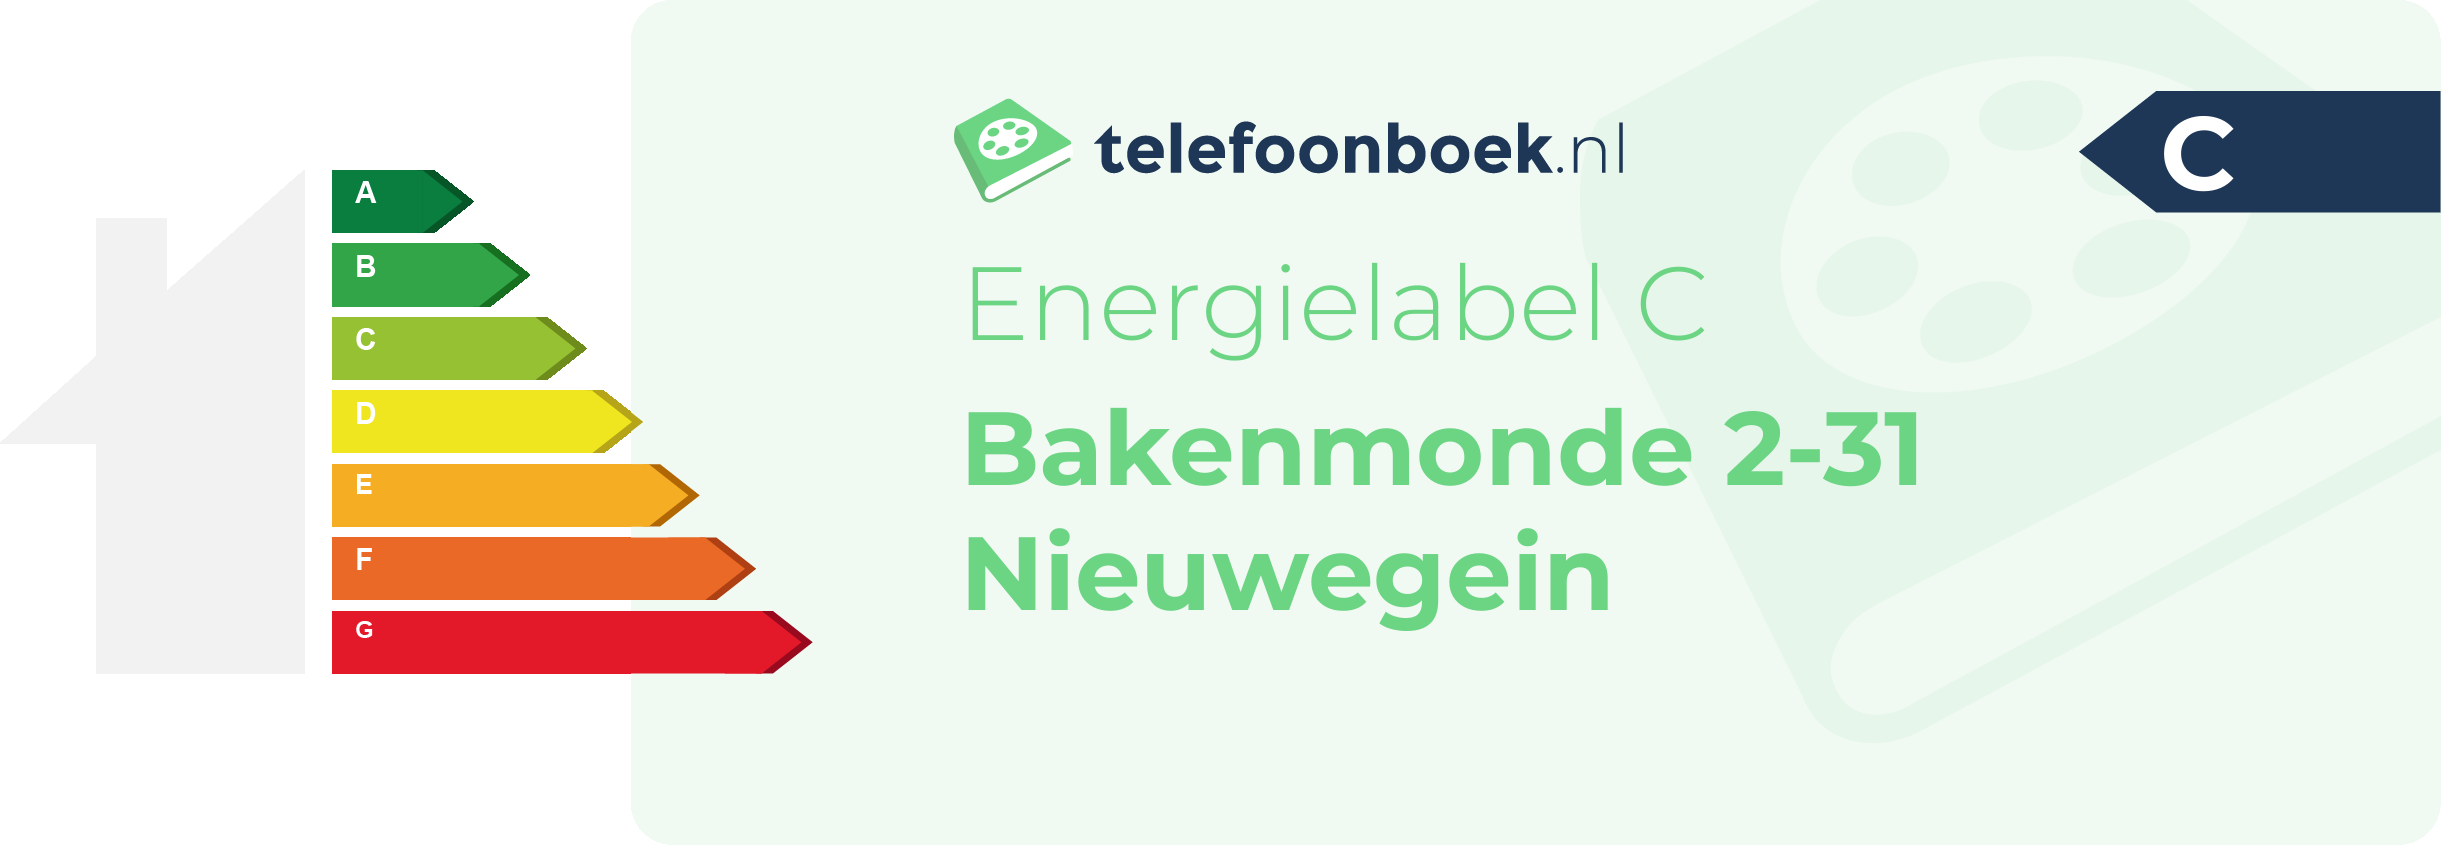 Energielabel Bakenmonde 2-31 Nieuwegein